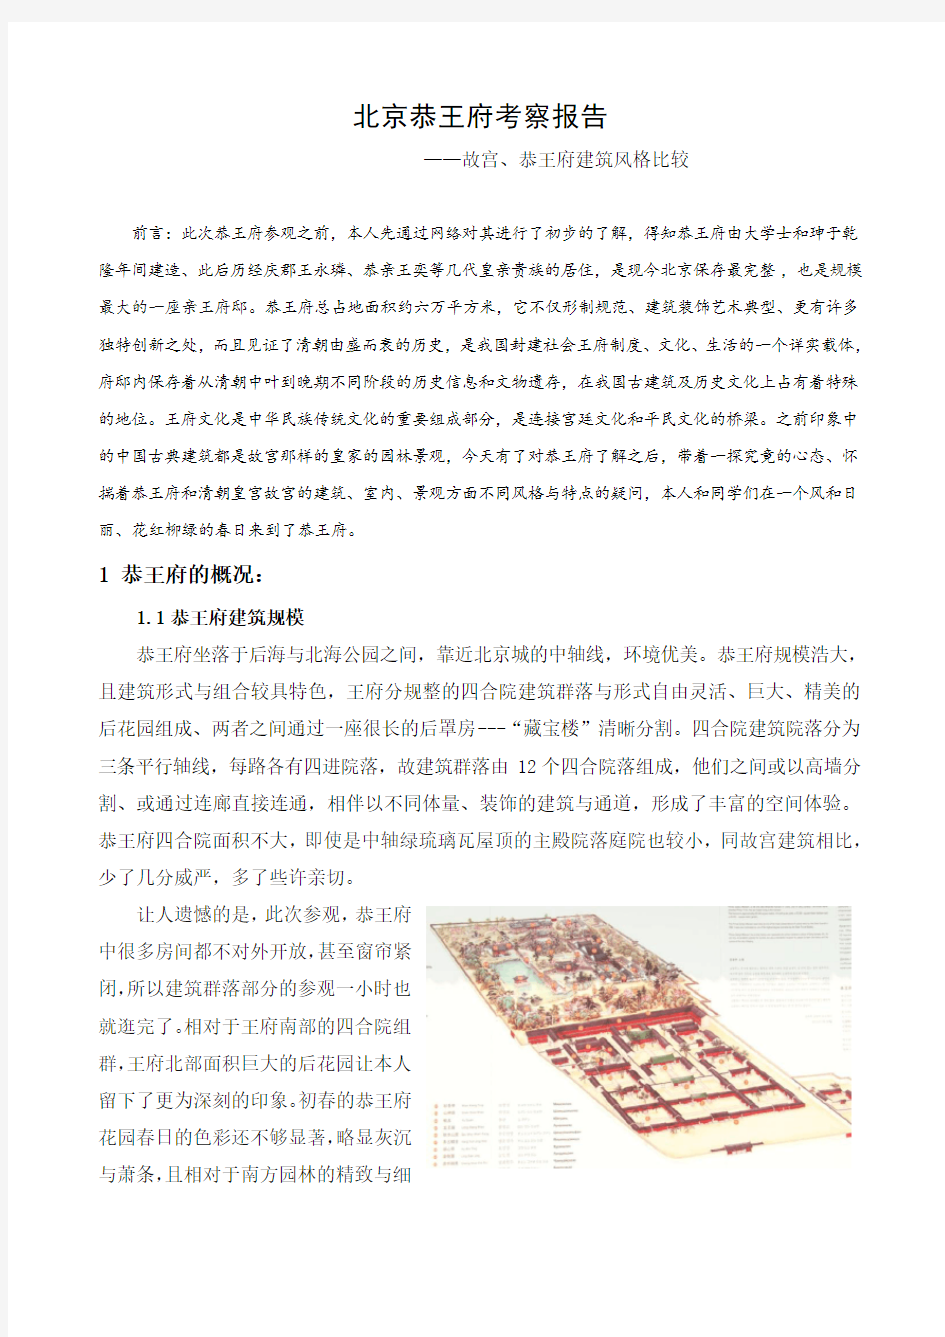 北京恭王府考察报告——故宫、恭王府建筑风格比较